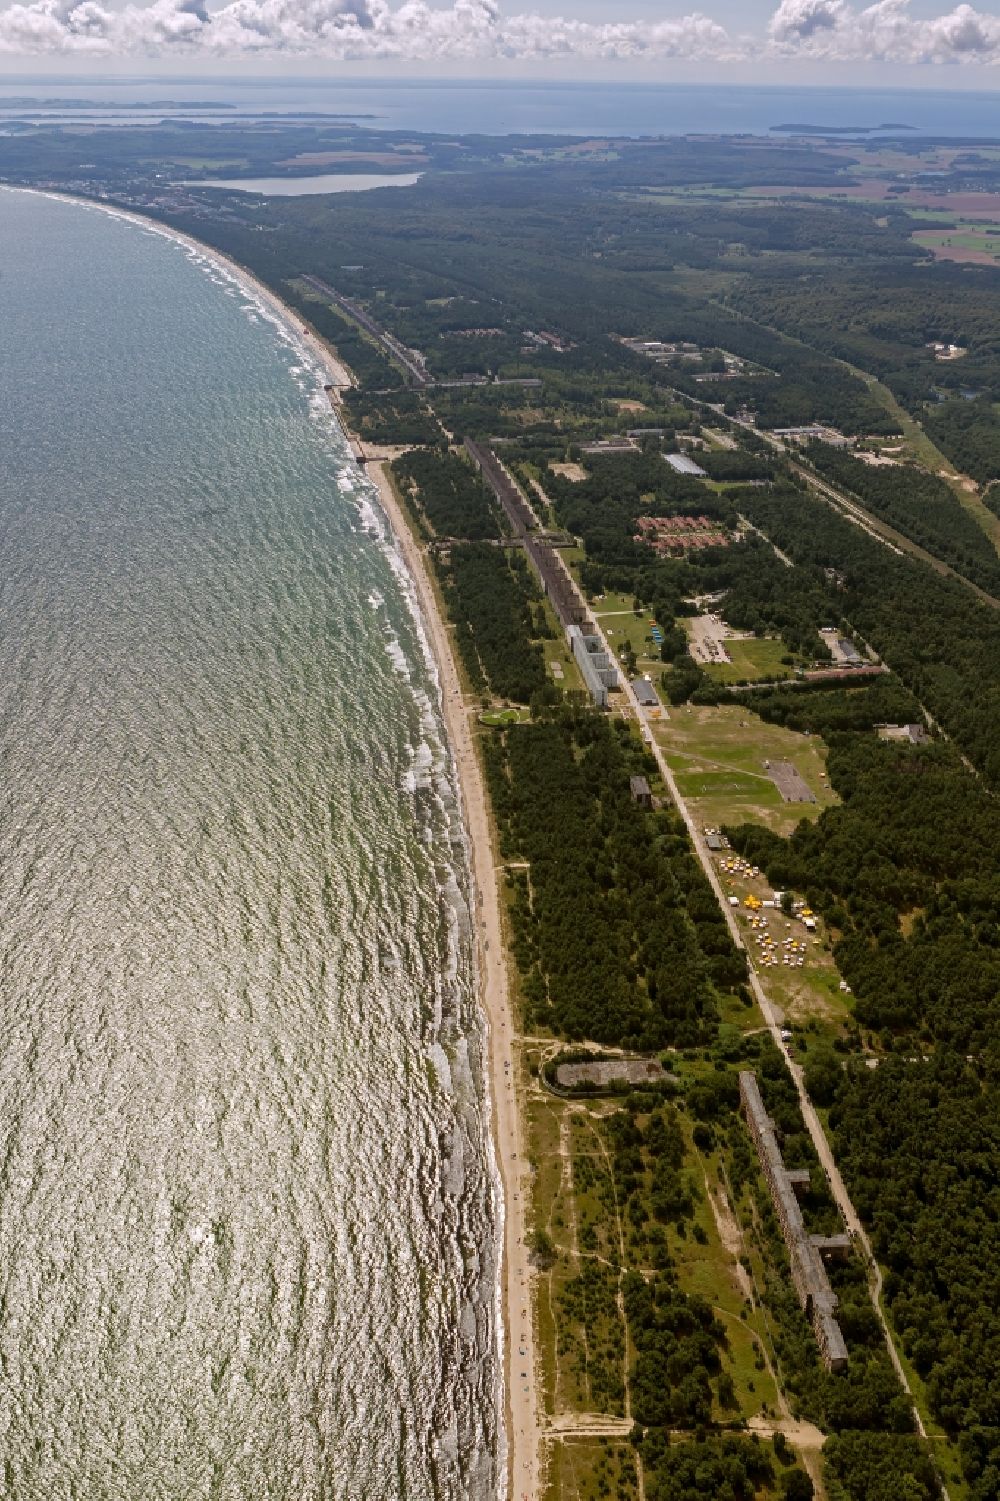 Luftbild Prora - Ufer der Ostsee in Prora auf der Insel Rügen in Mecklenburg-Vorpommern